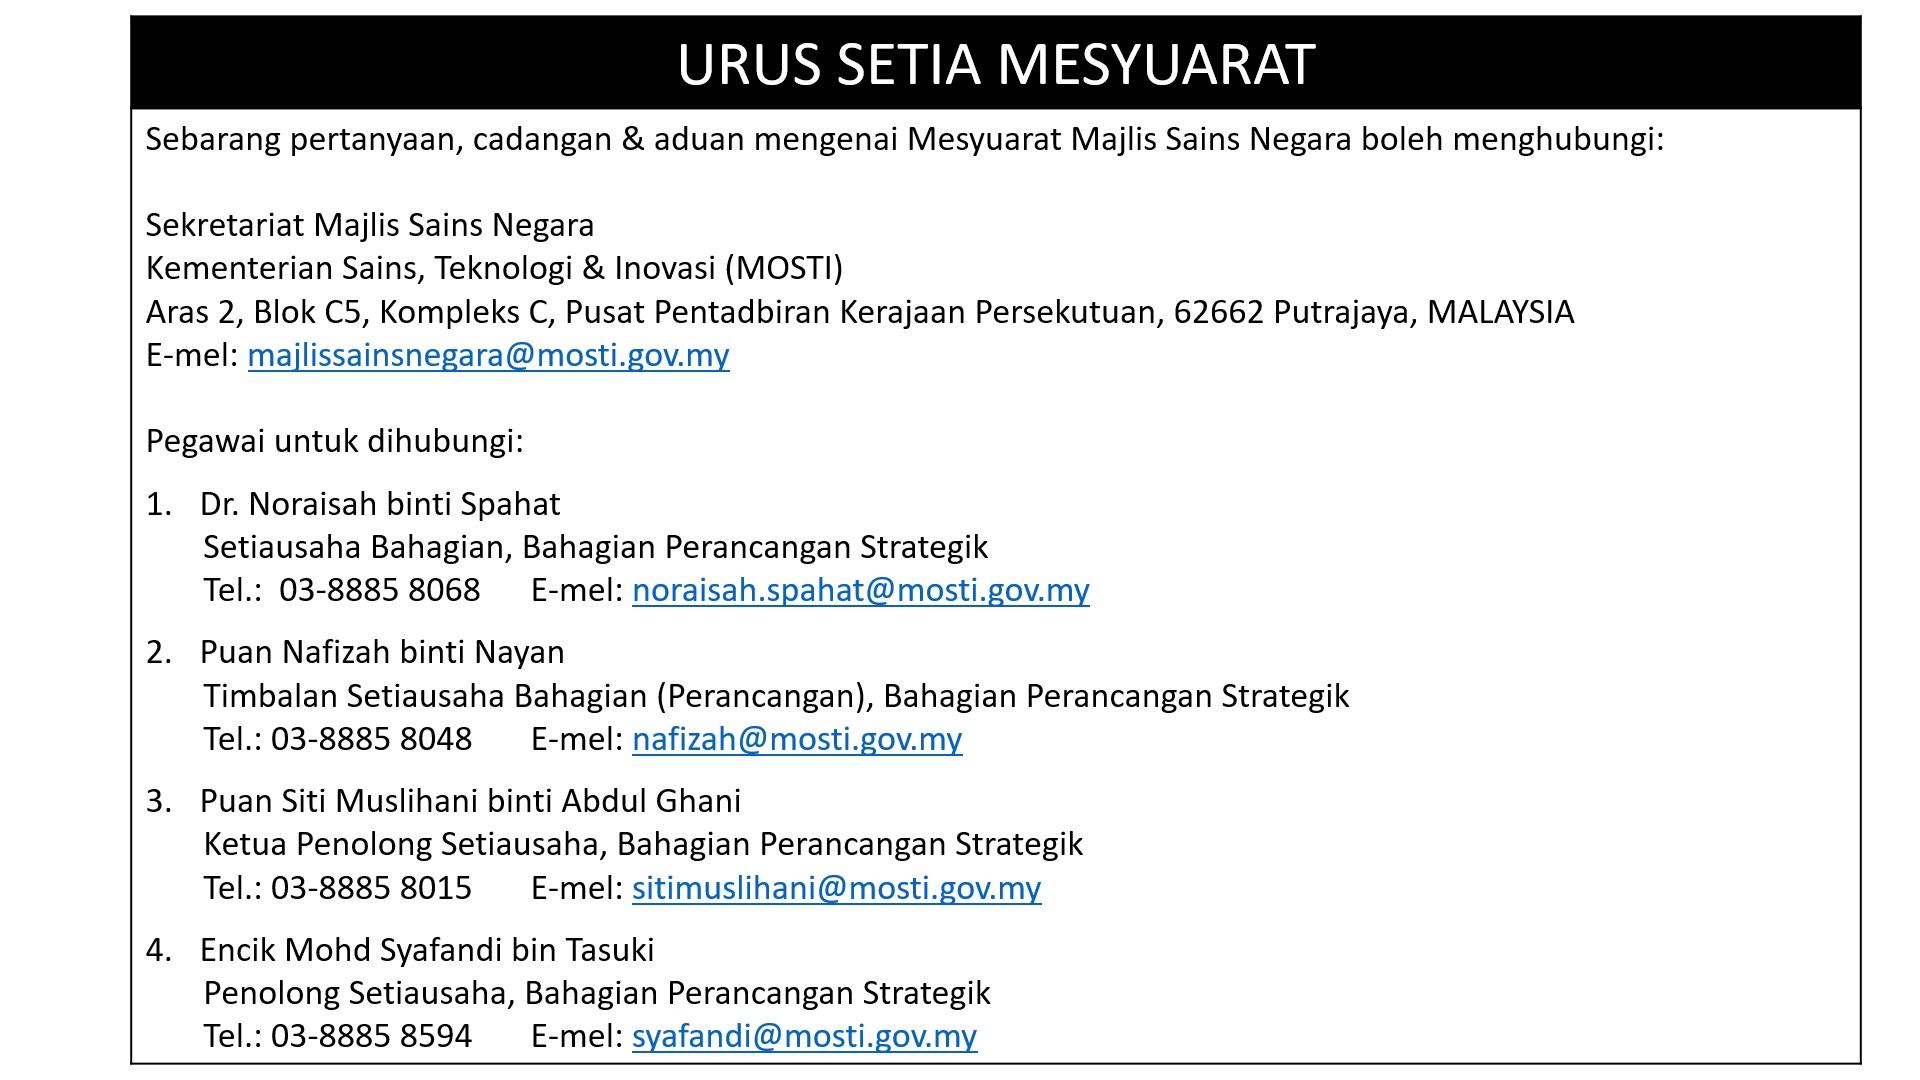 Microsite NSC Urus Setia